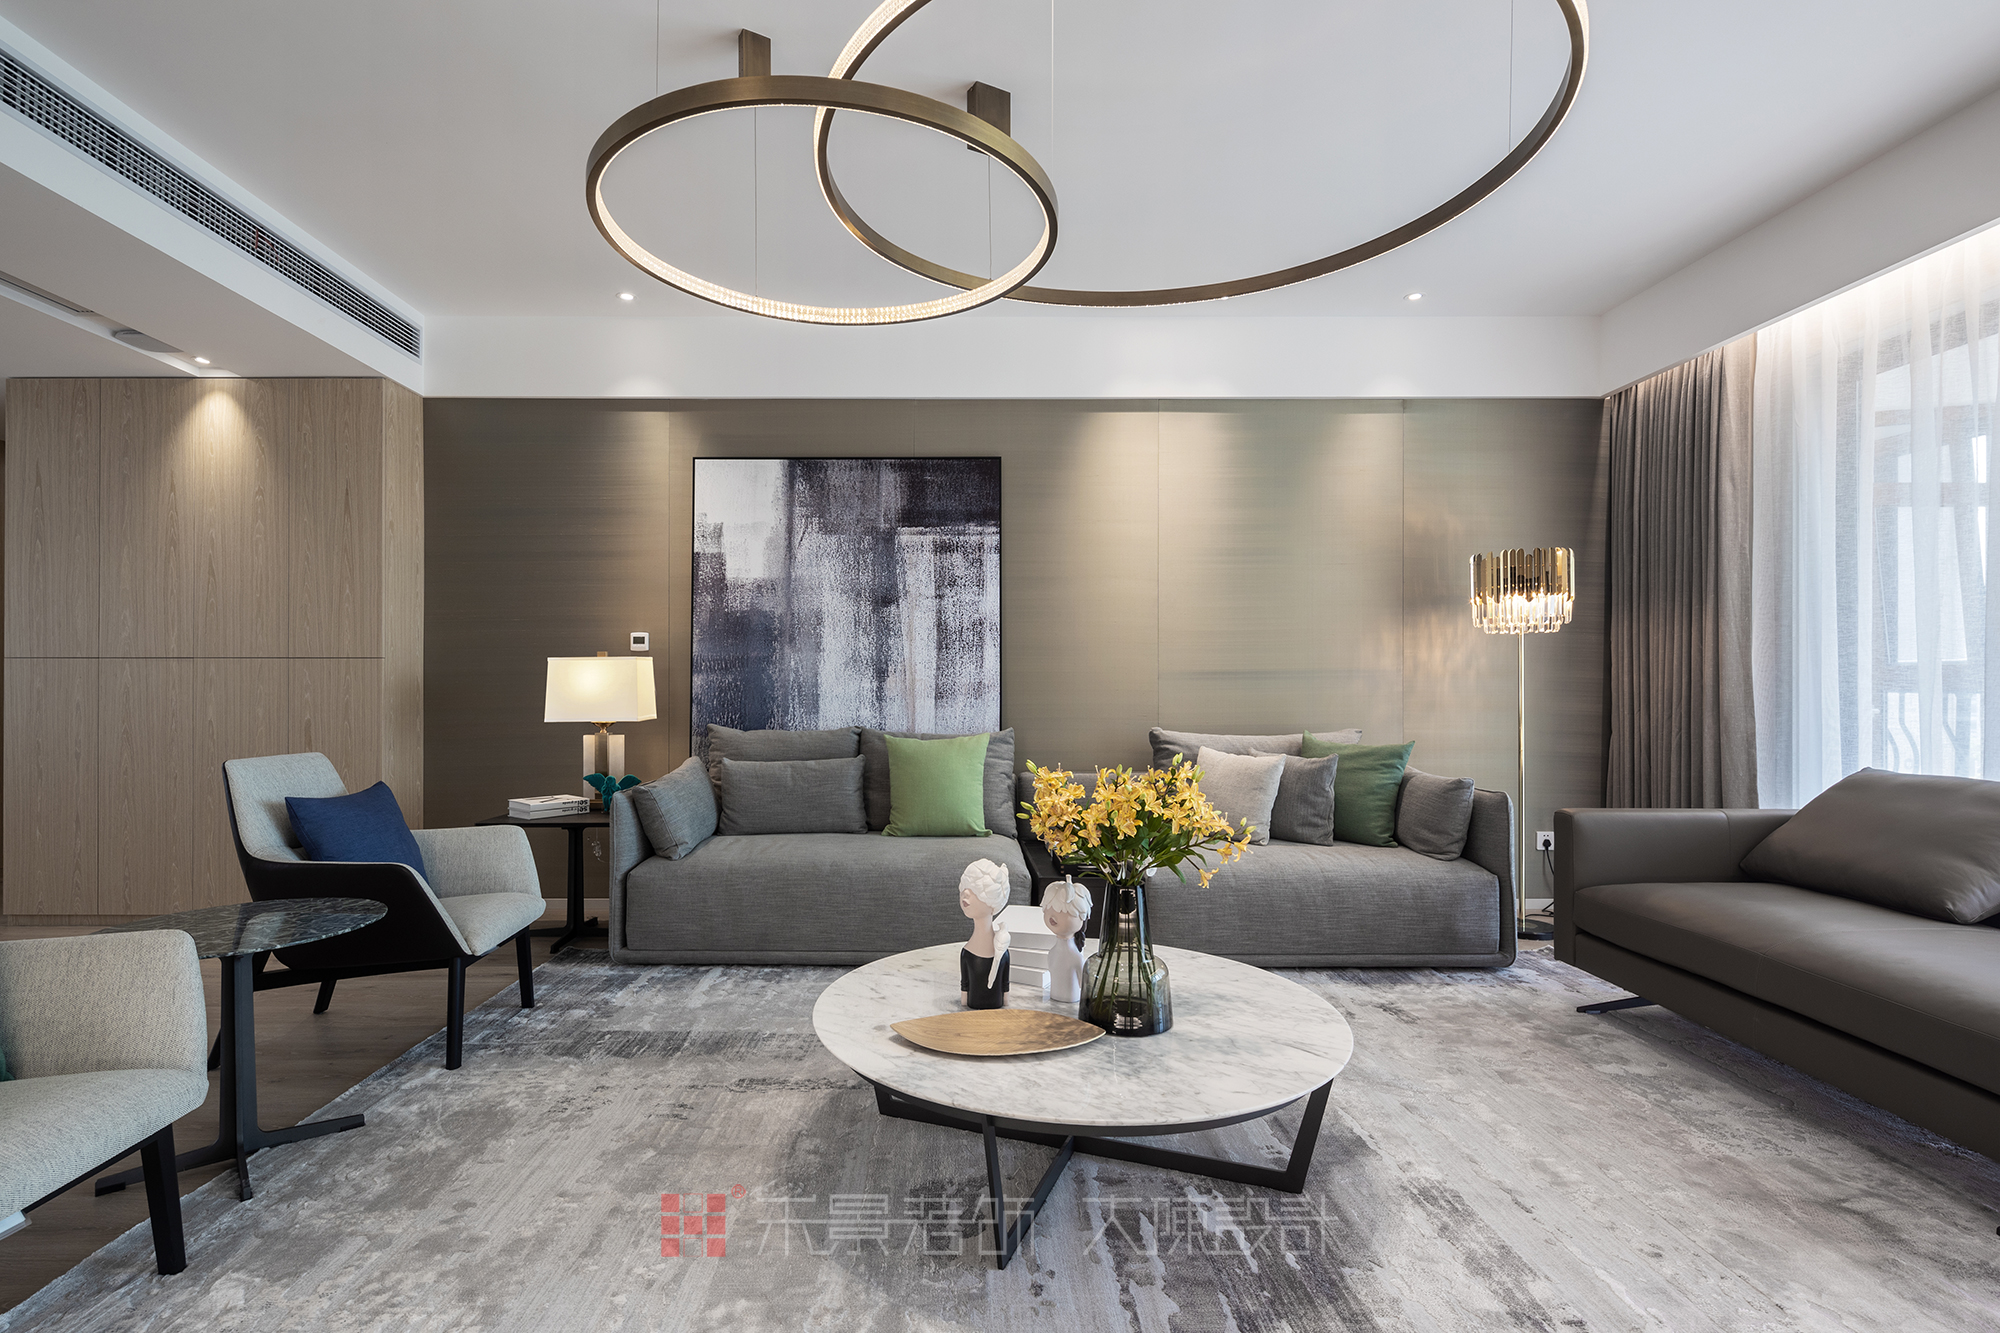 客厅图片来自禾景大陈设计在柏悦华府公寓项目的分享